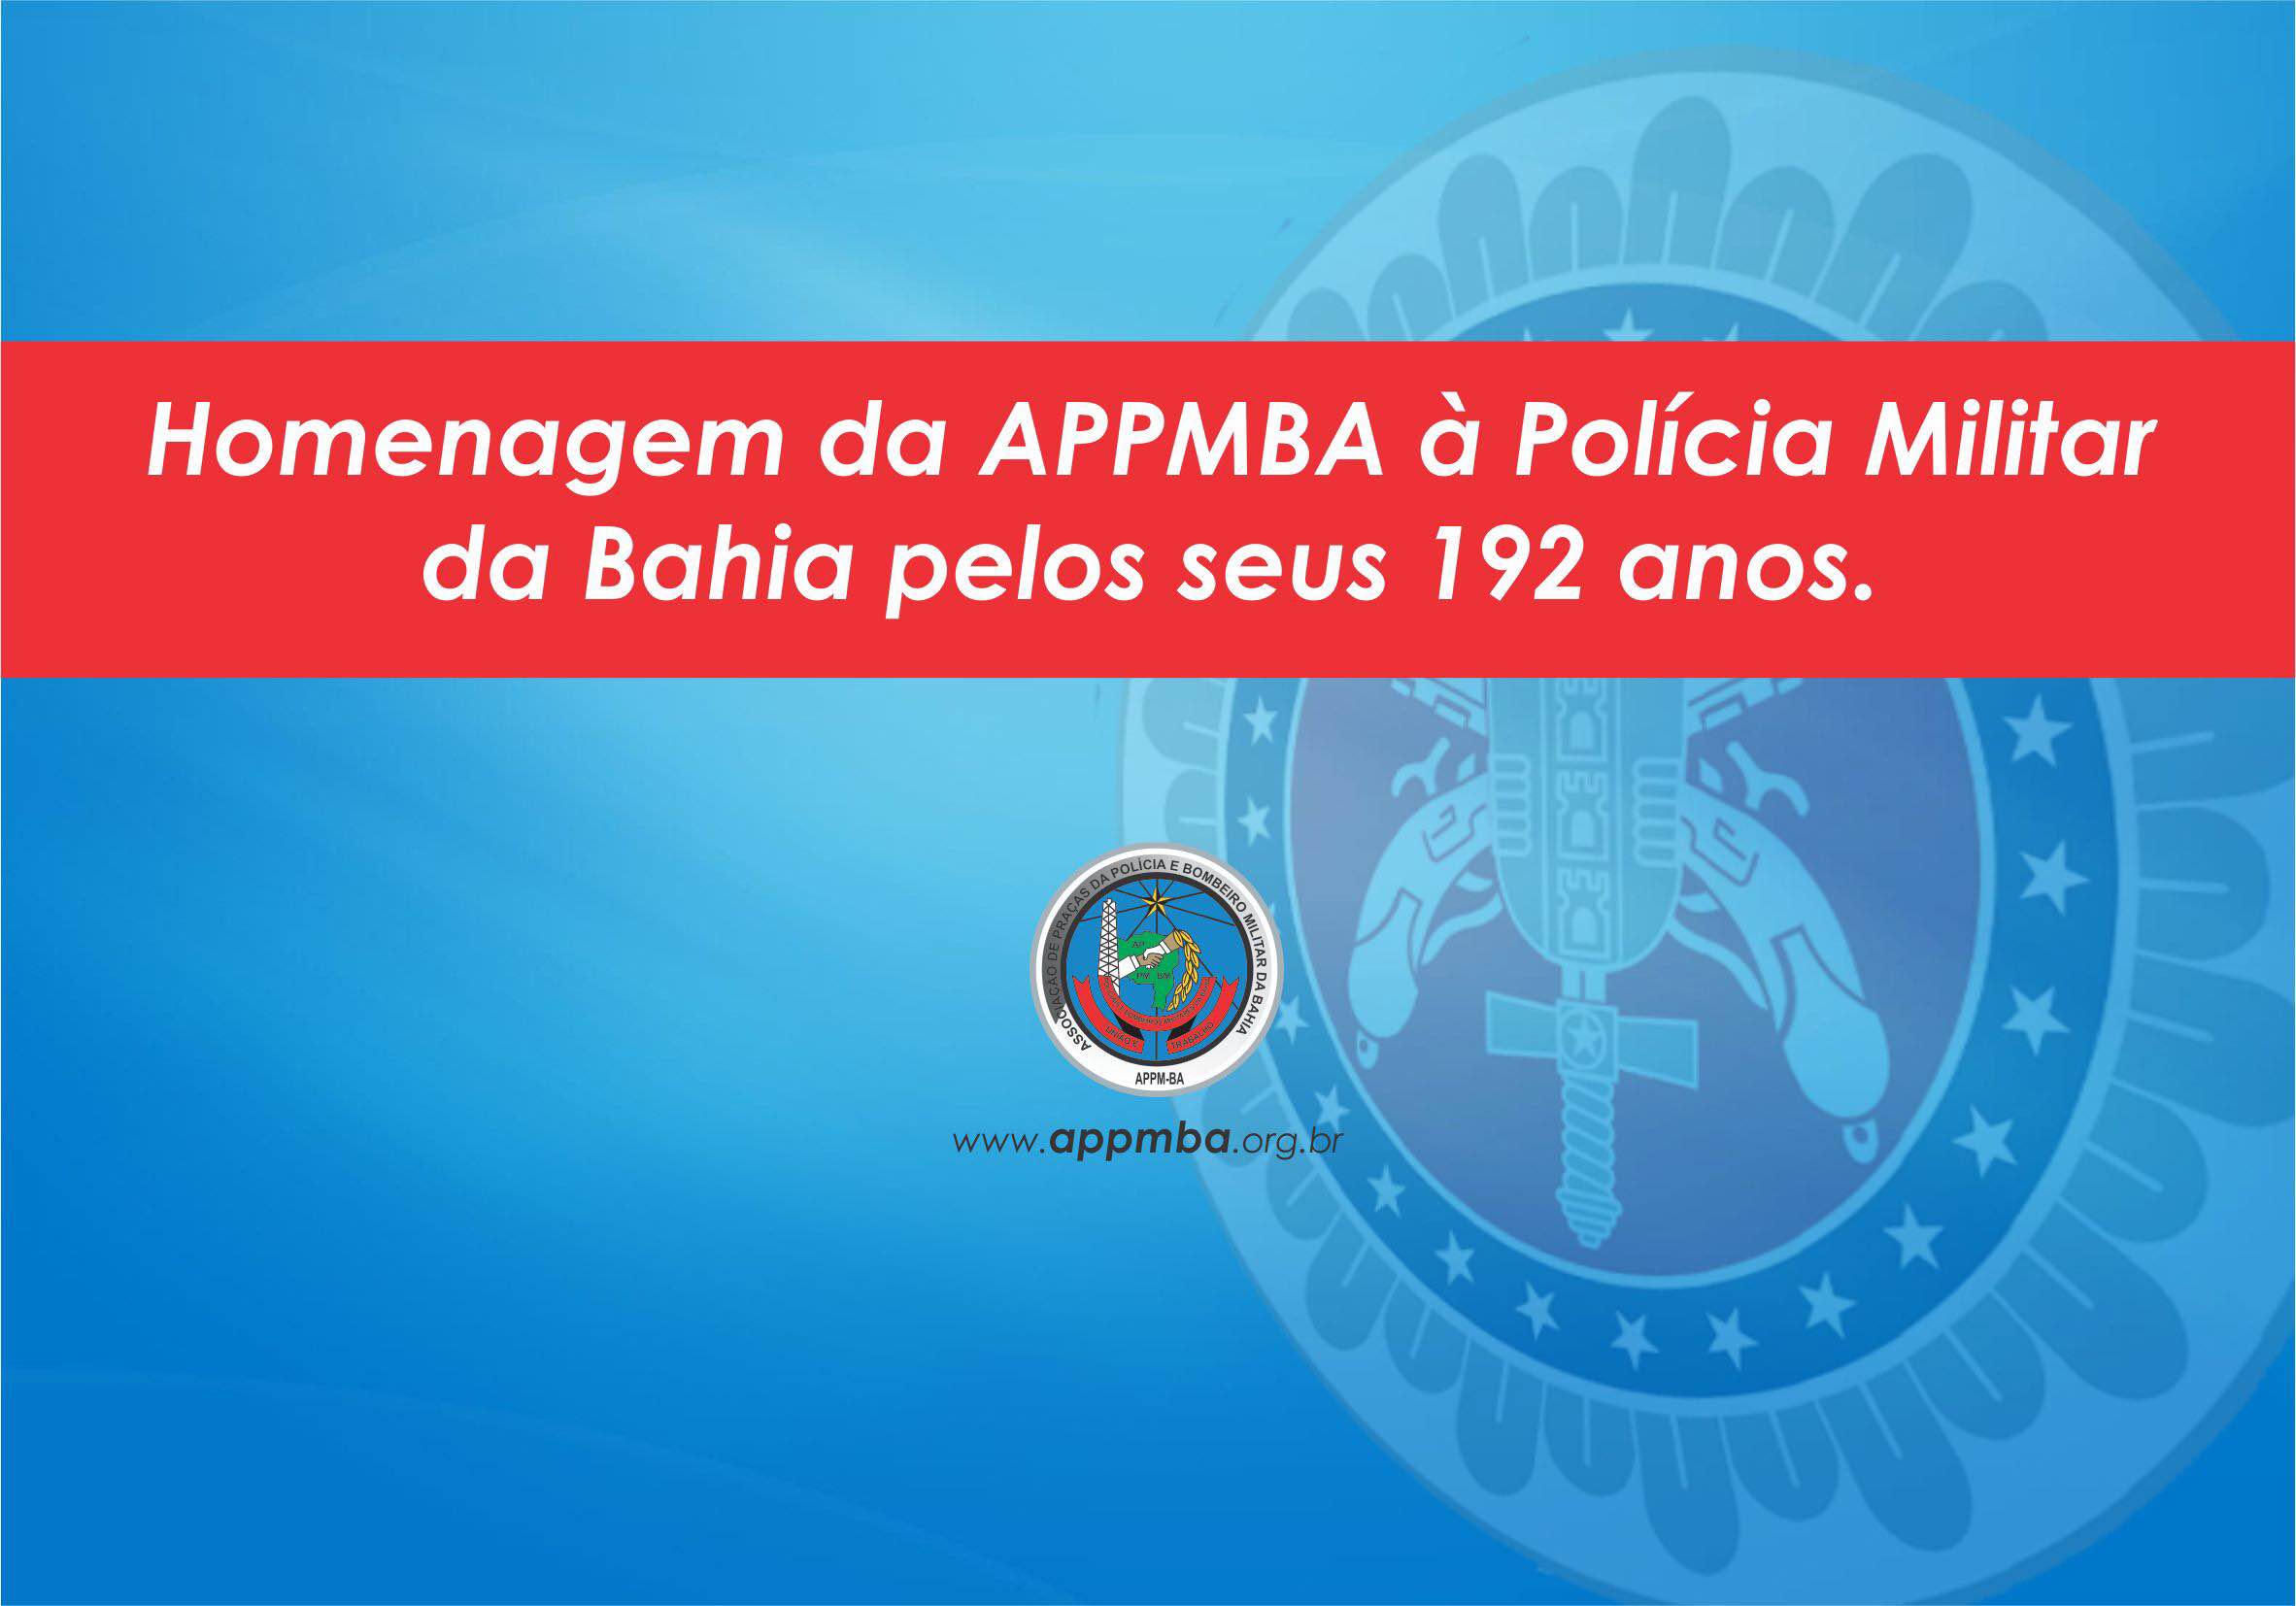 Polícia Militar da Bahia - 192 anos!